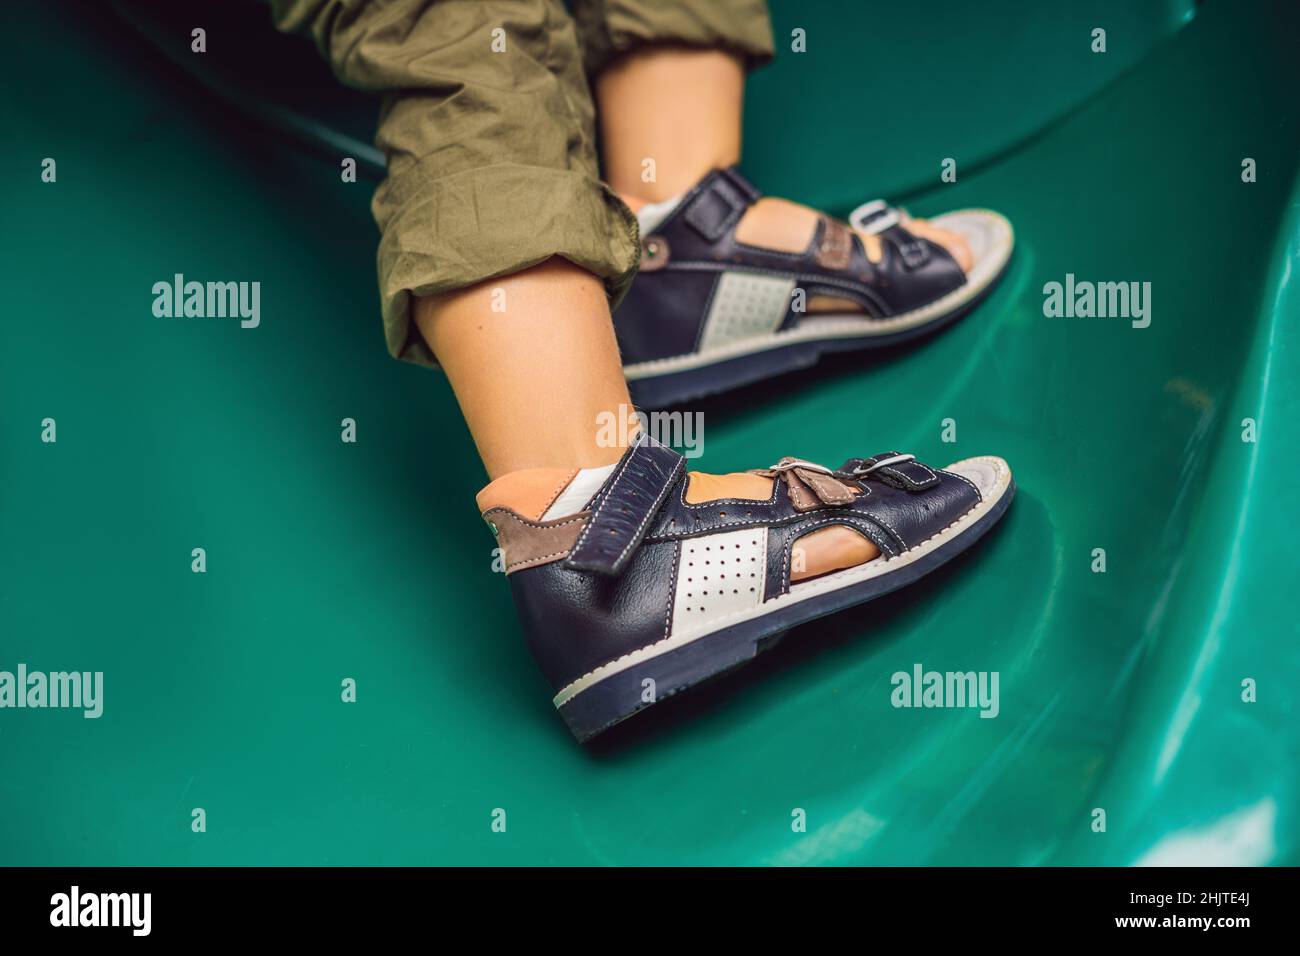 Zapatos ortopédicos para niños en los pies muchacho Fotografía de stock Alamy